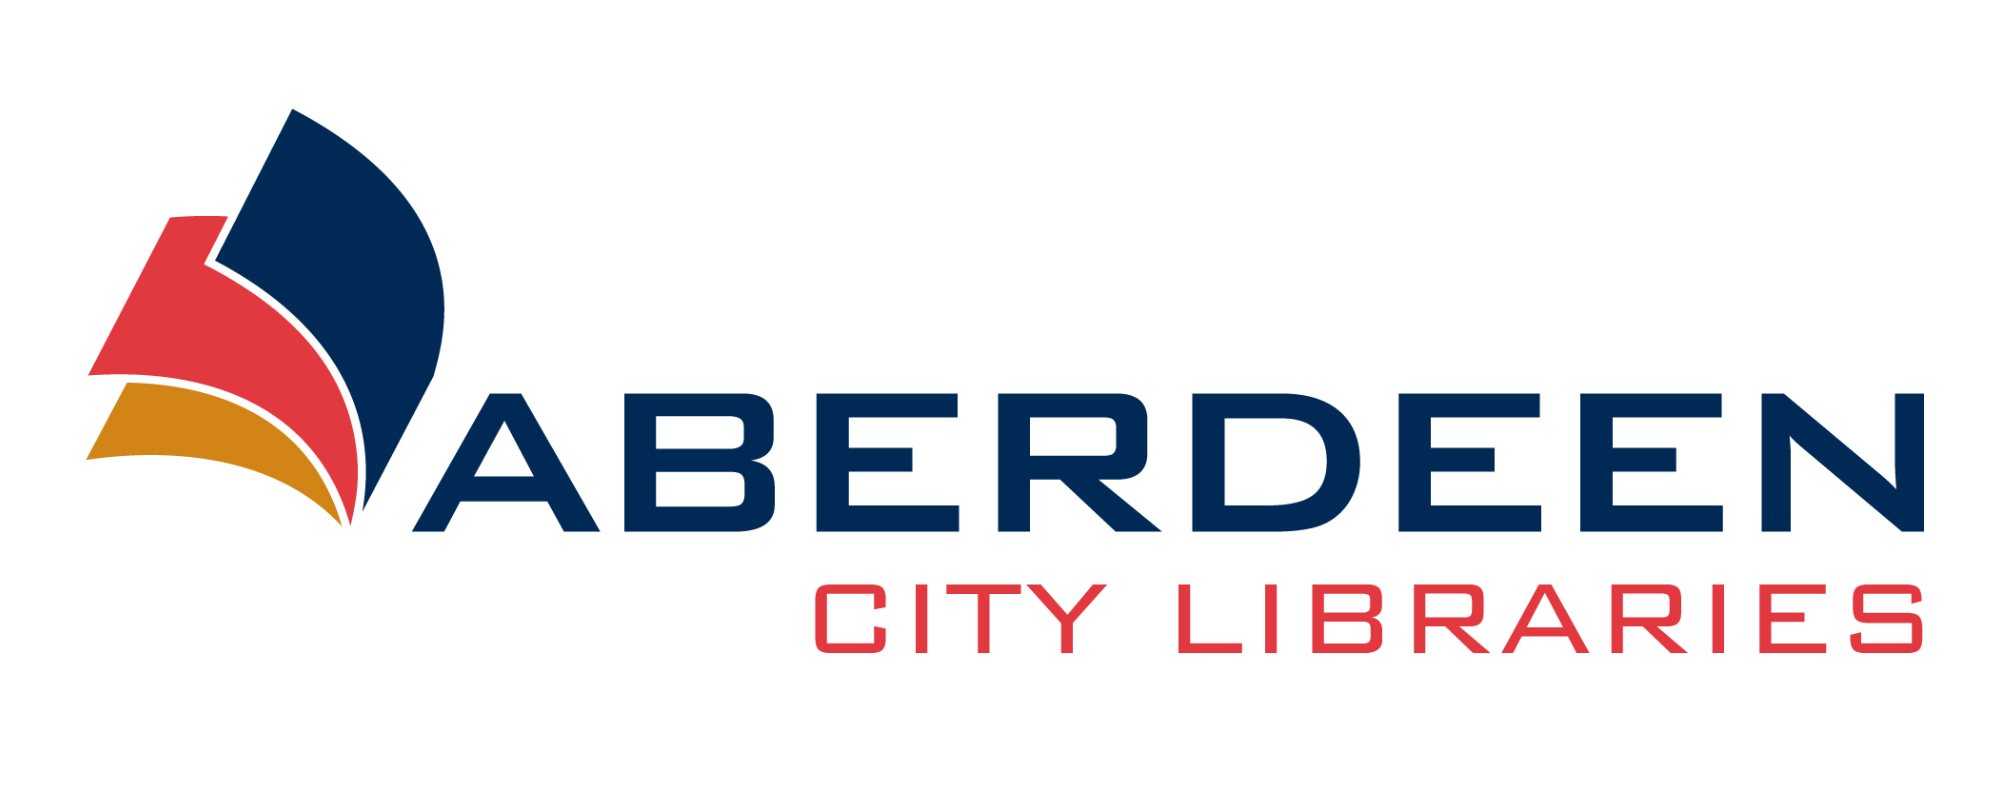 Aberdeen city libraries